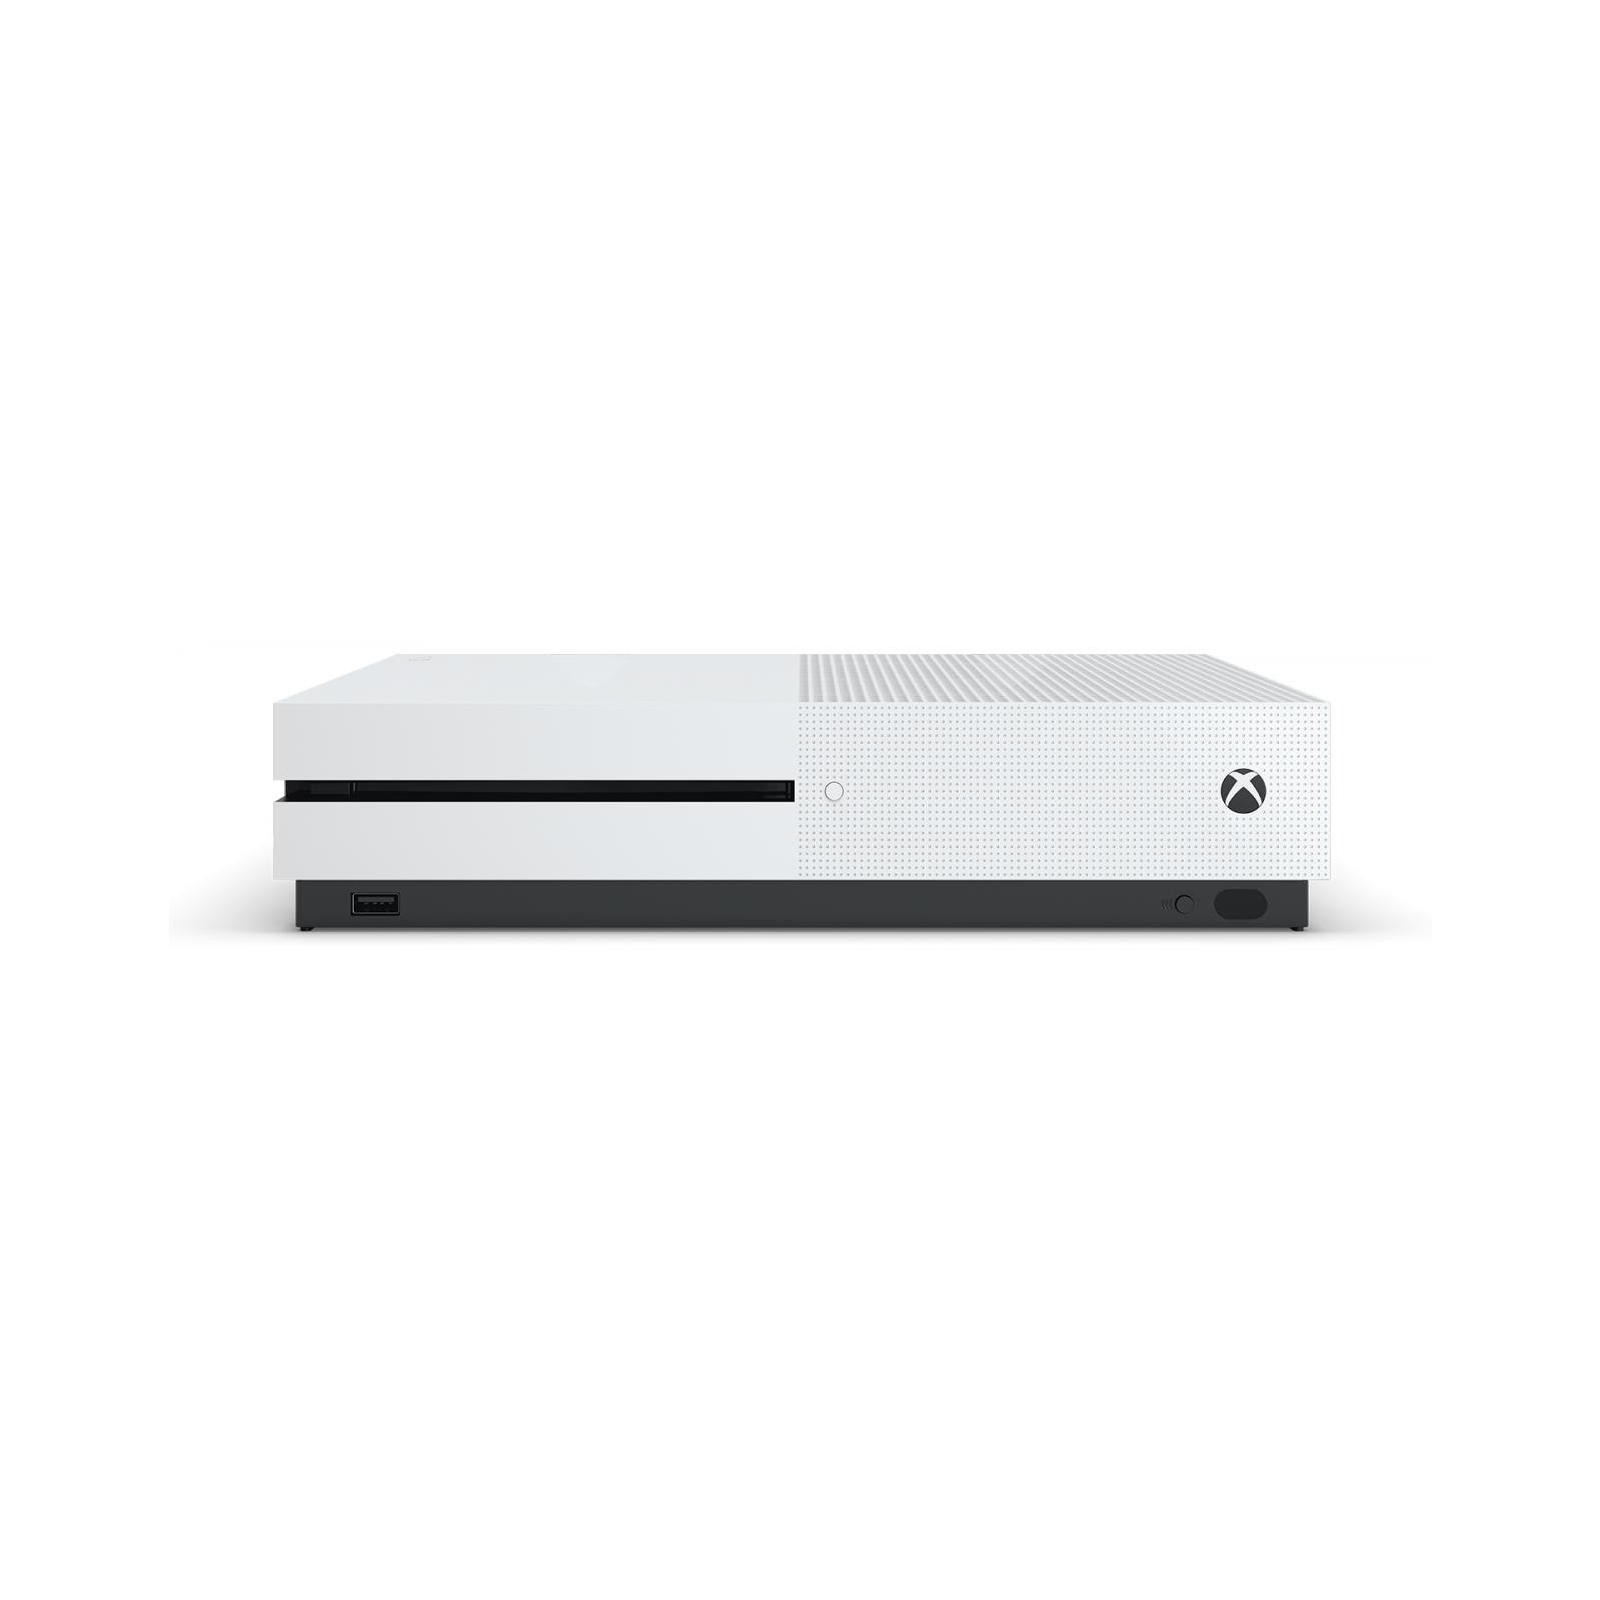 Игровая консоль Microsoft Xbox One S 1TB Gears 5 Bundle изображение 3